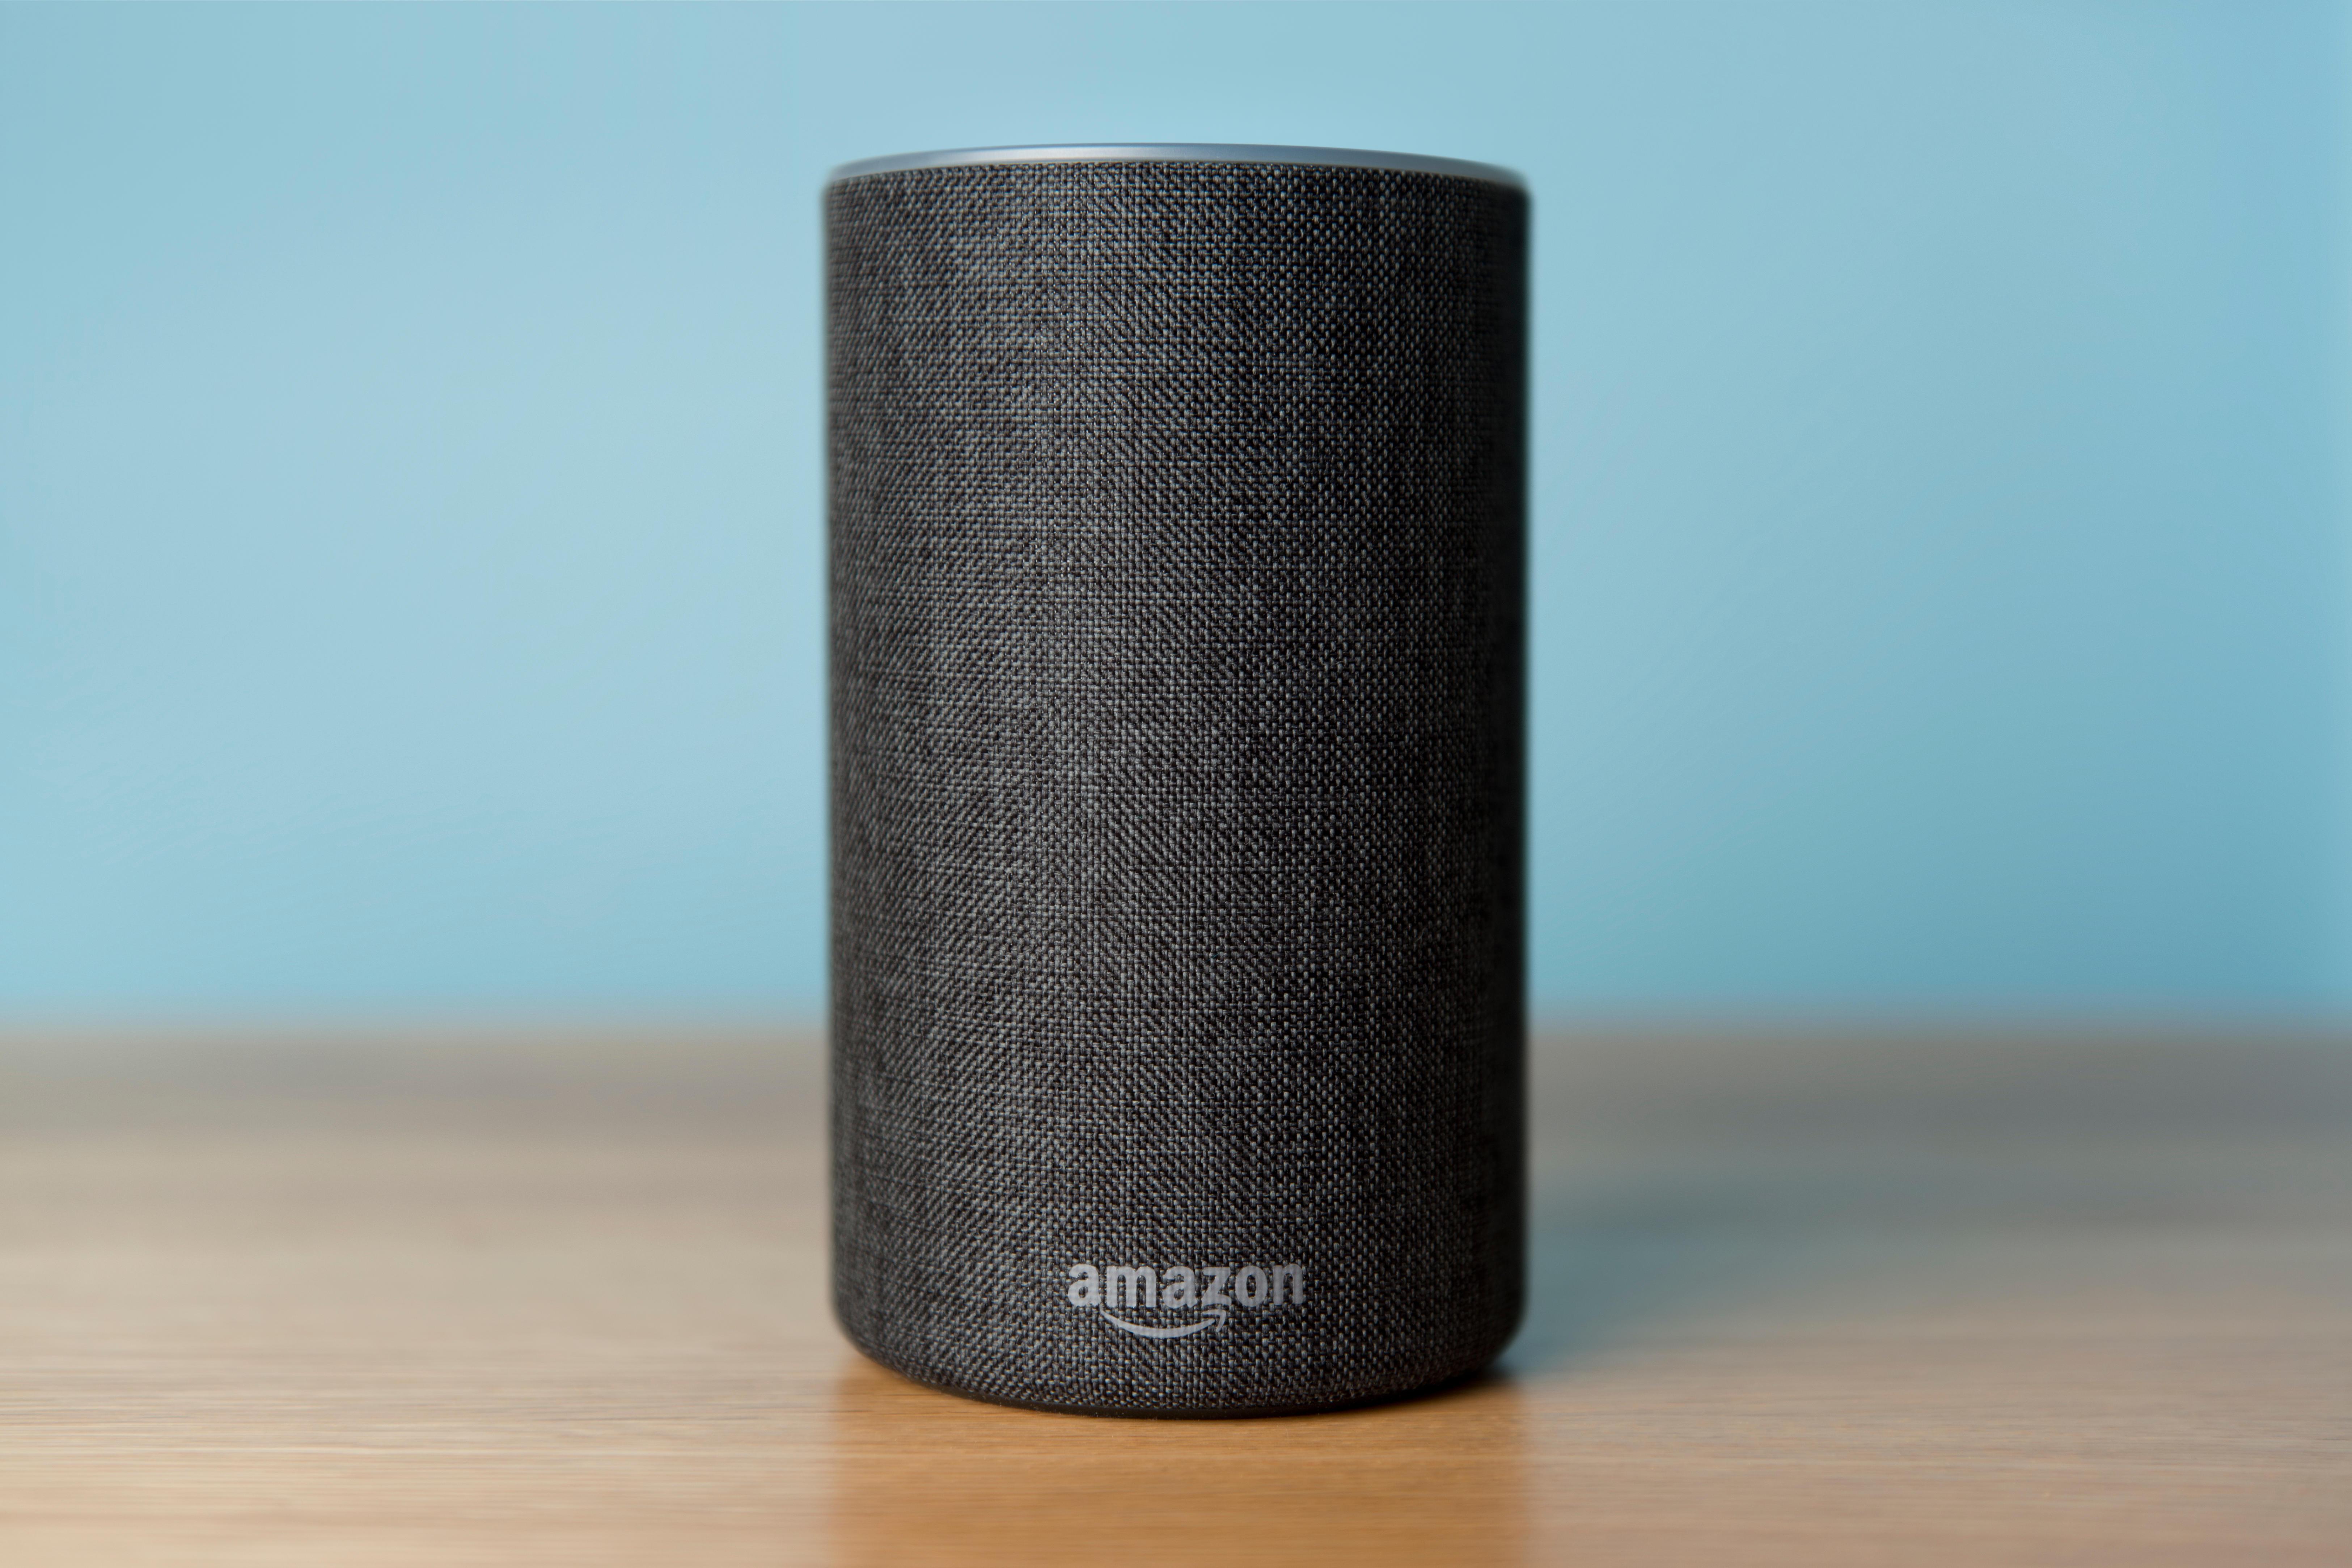  Anda Amazon Echo luar biasa dan pintar - tetapi apakah ini mimpi buruk privasi?